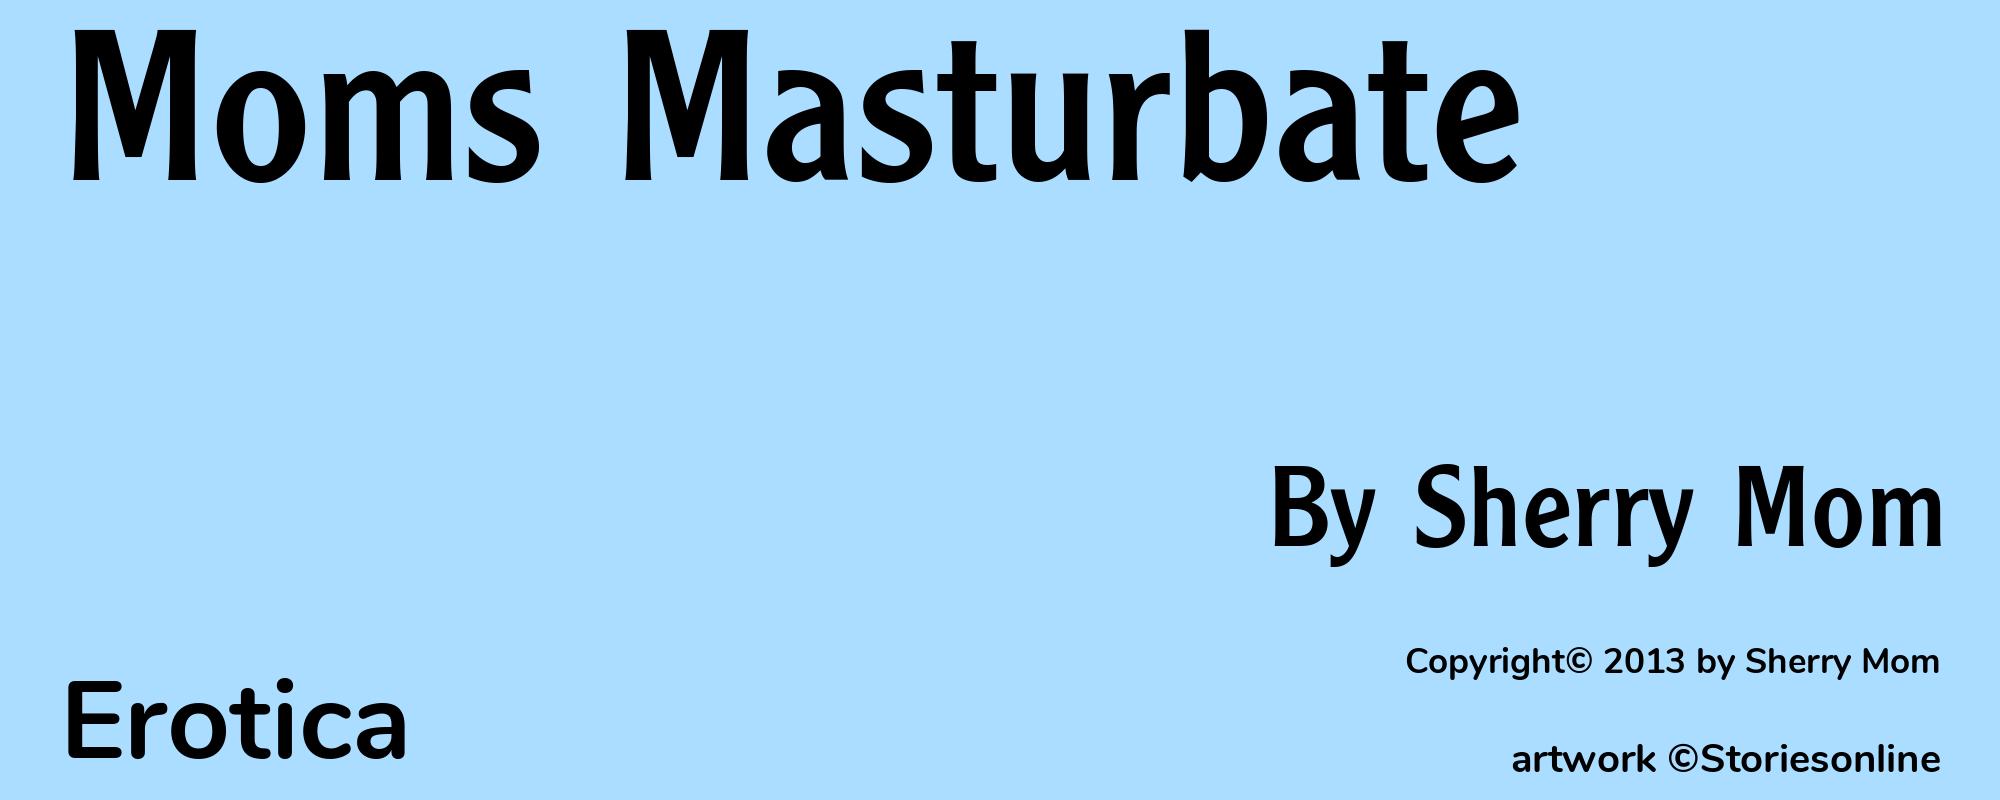 Moms Masturbate - Cover